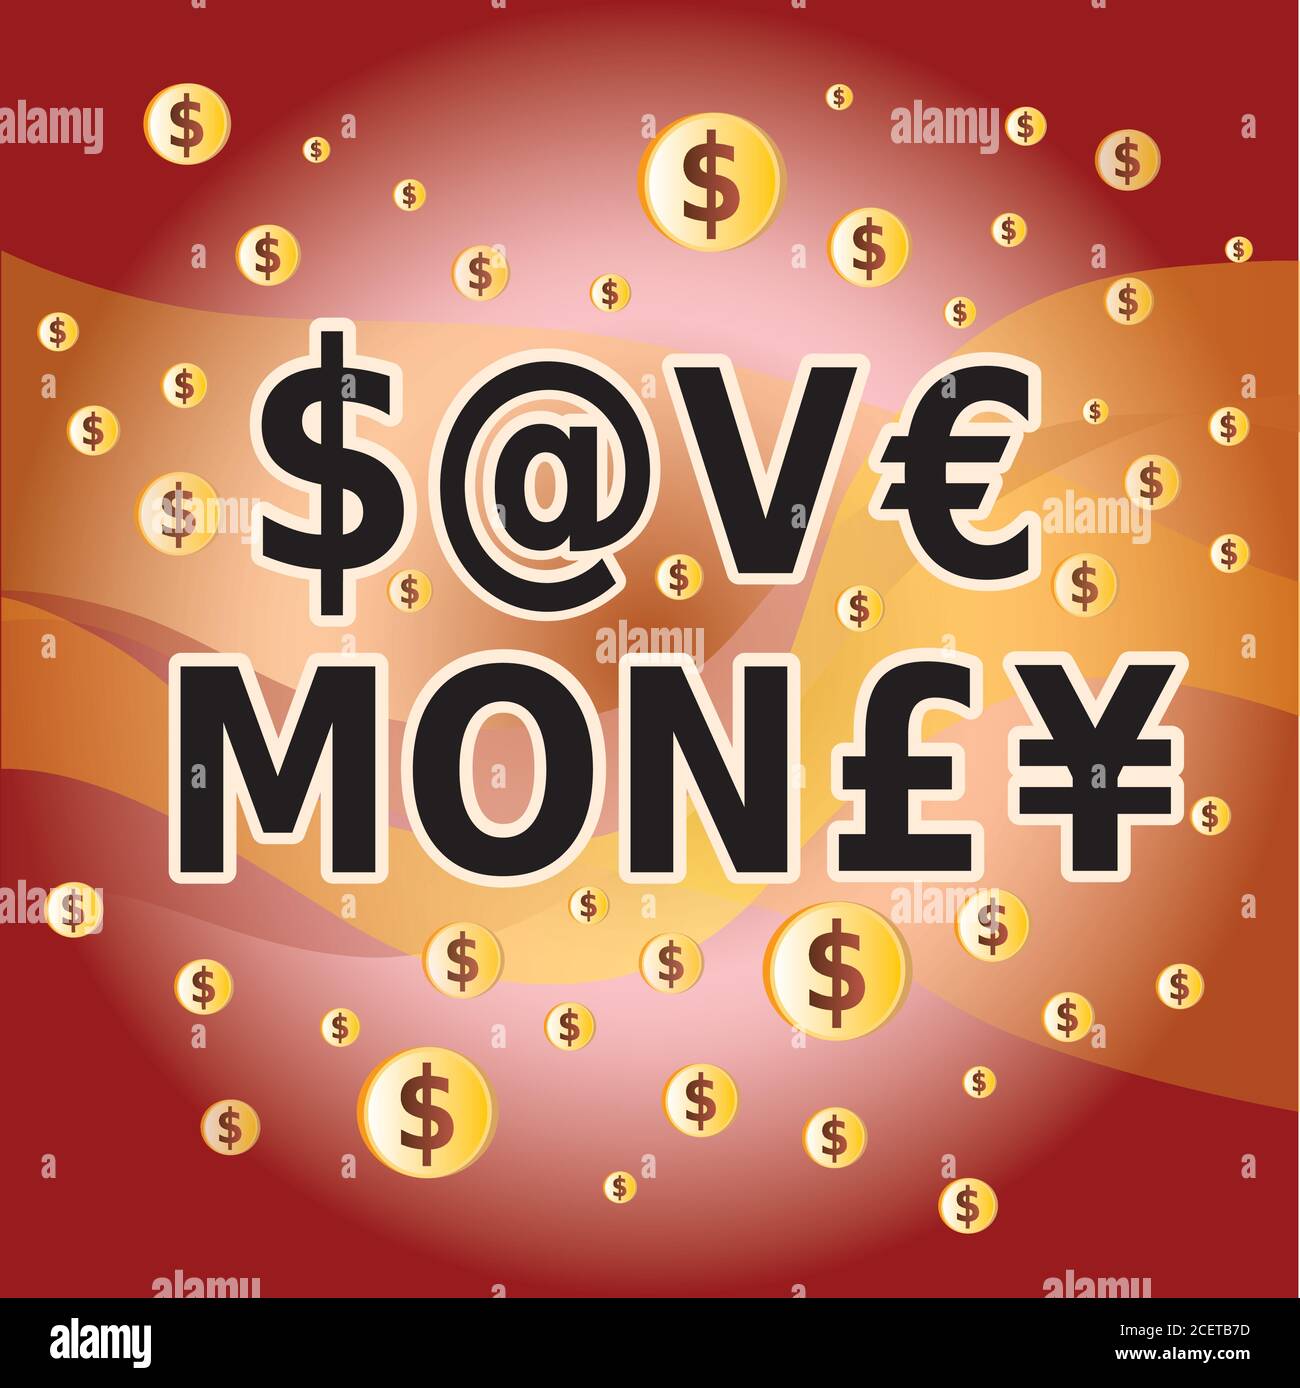 Sparen Sie Geld Zitat - Briefe und Geld Währung Symbole in Rot und Gold Farben Stock Vektor